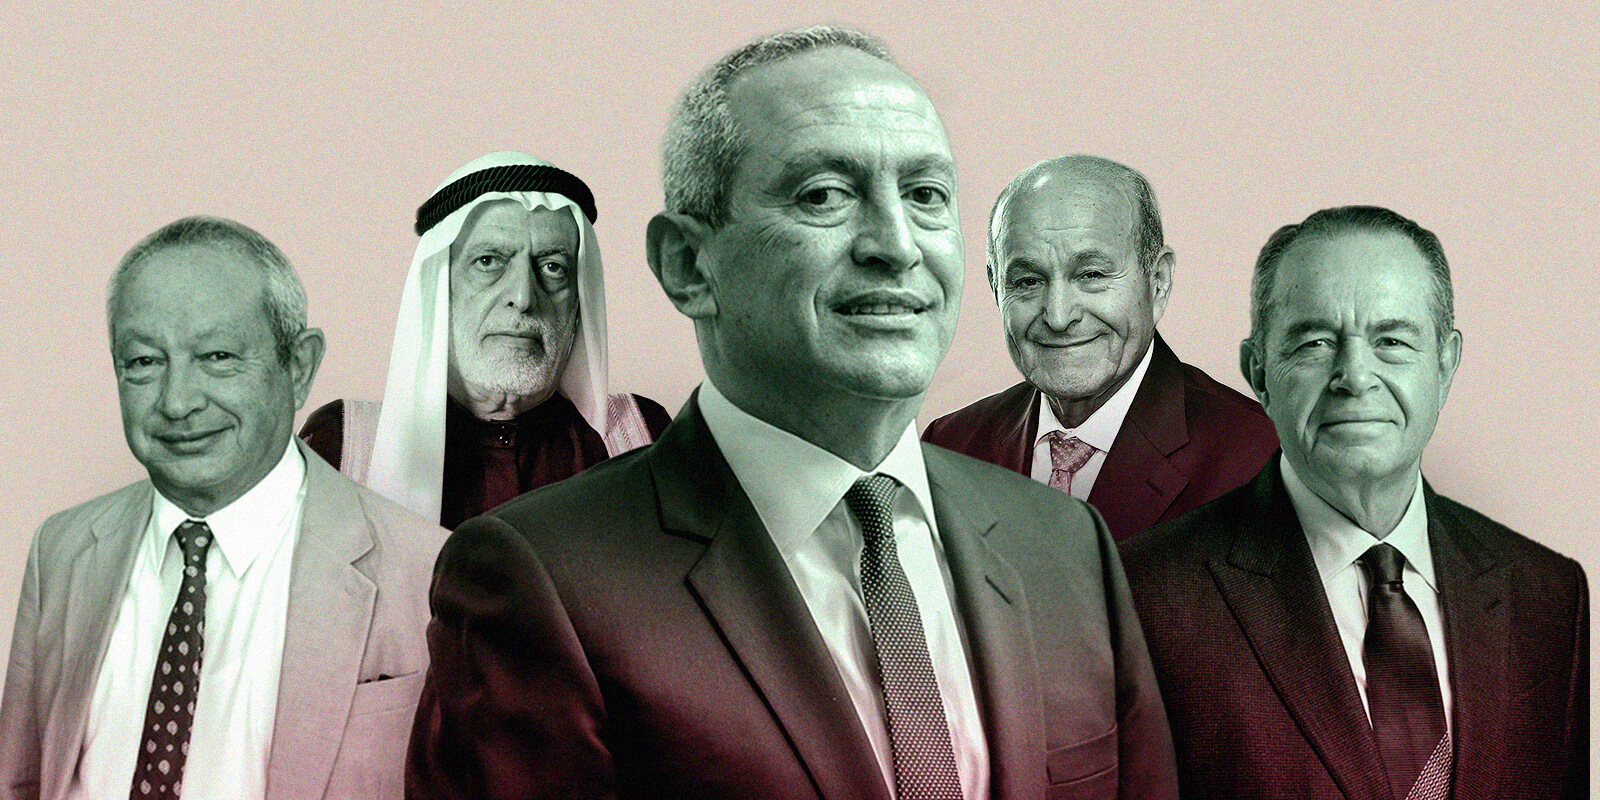 أغنى المليارديرات العرب